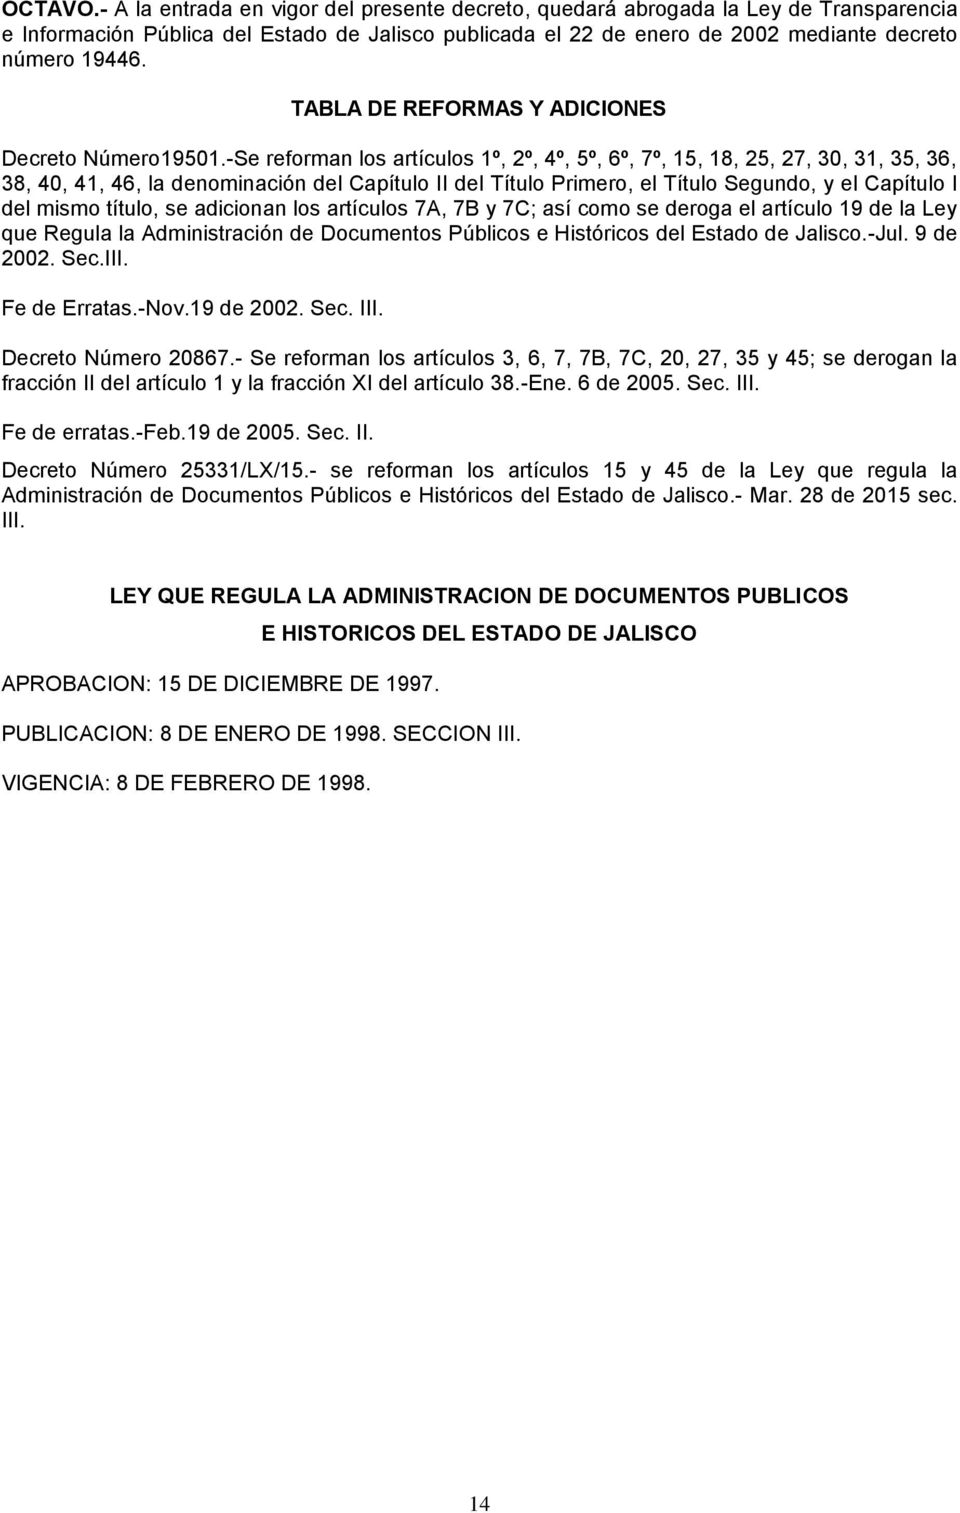 TABLA DE REFORMAS Y ADICIONES Decreto Número19501.